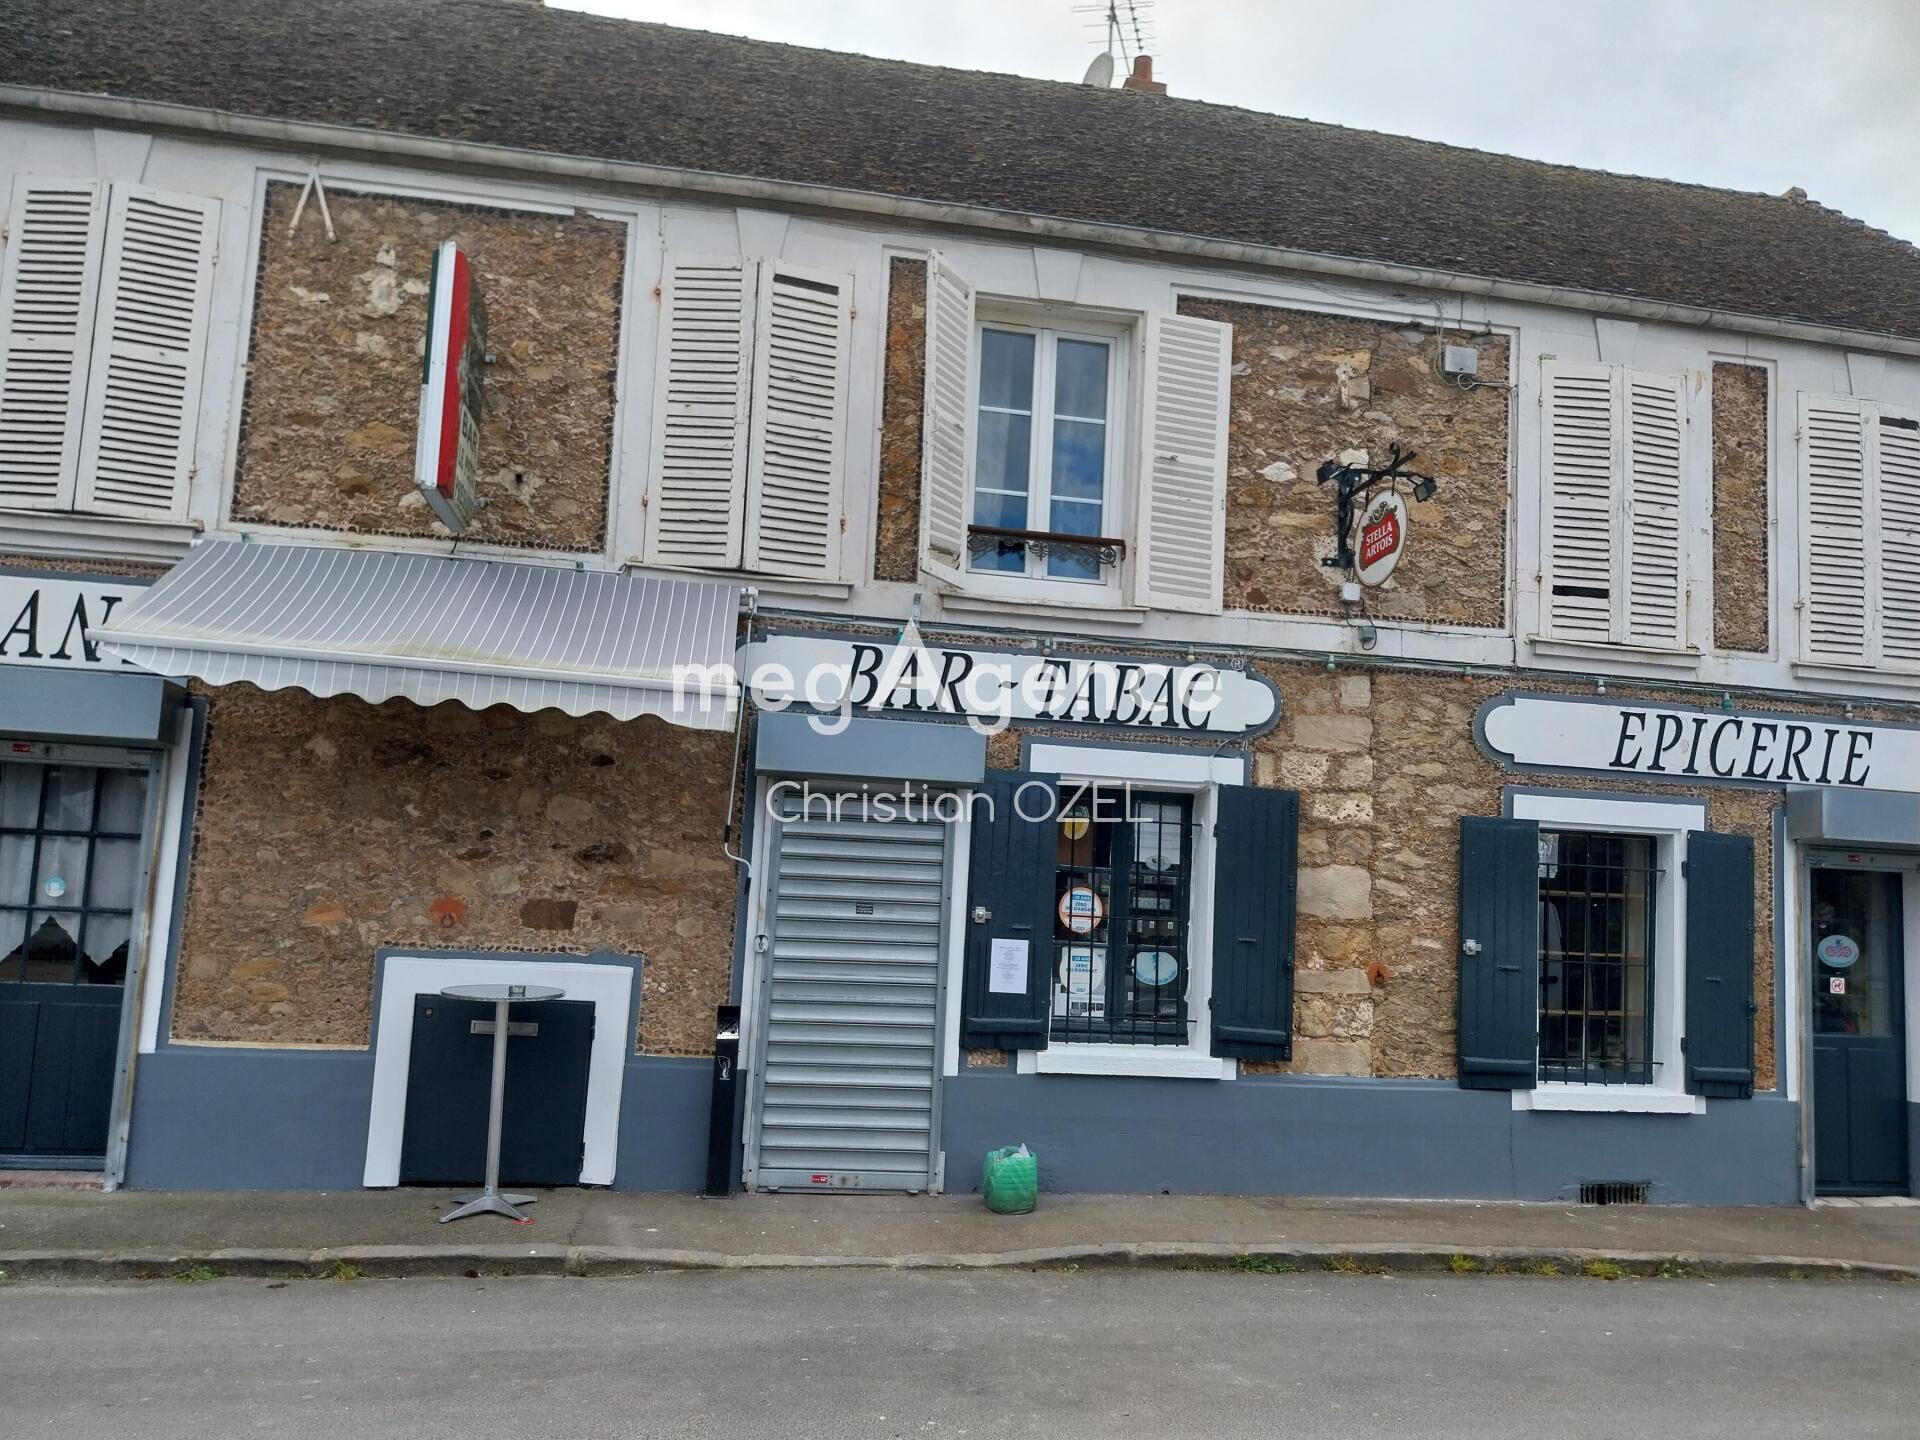 Vente bar restaurant épicerie à Presle en Brie